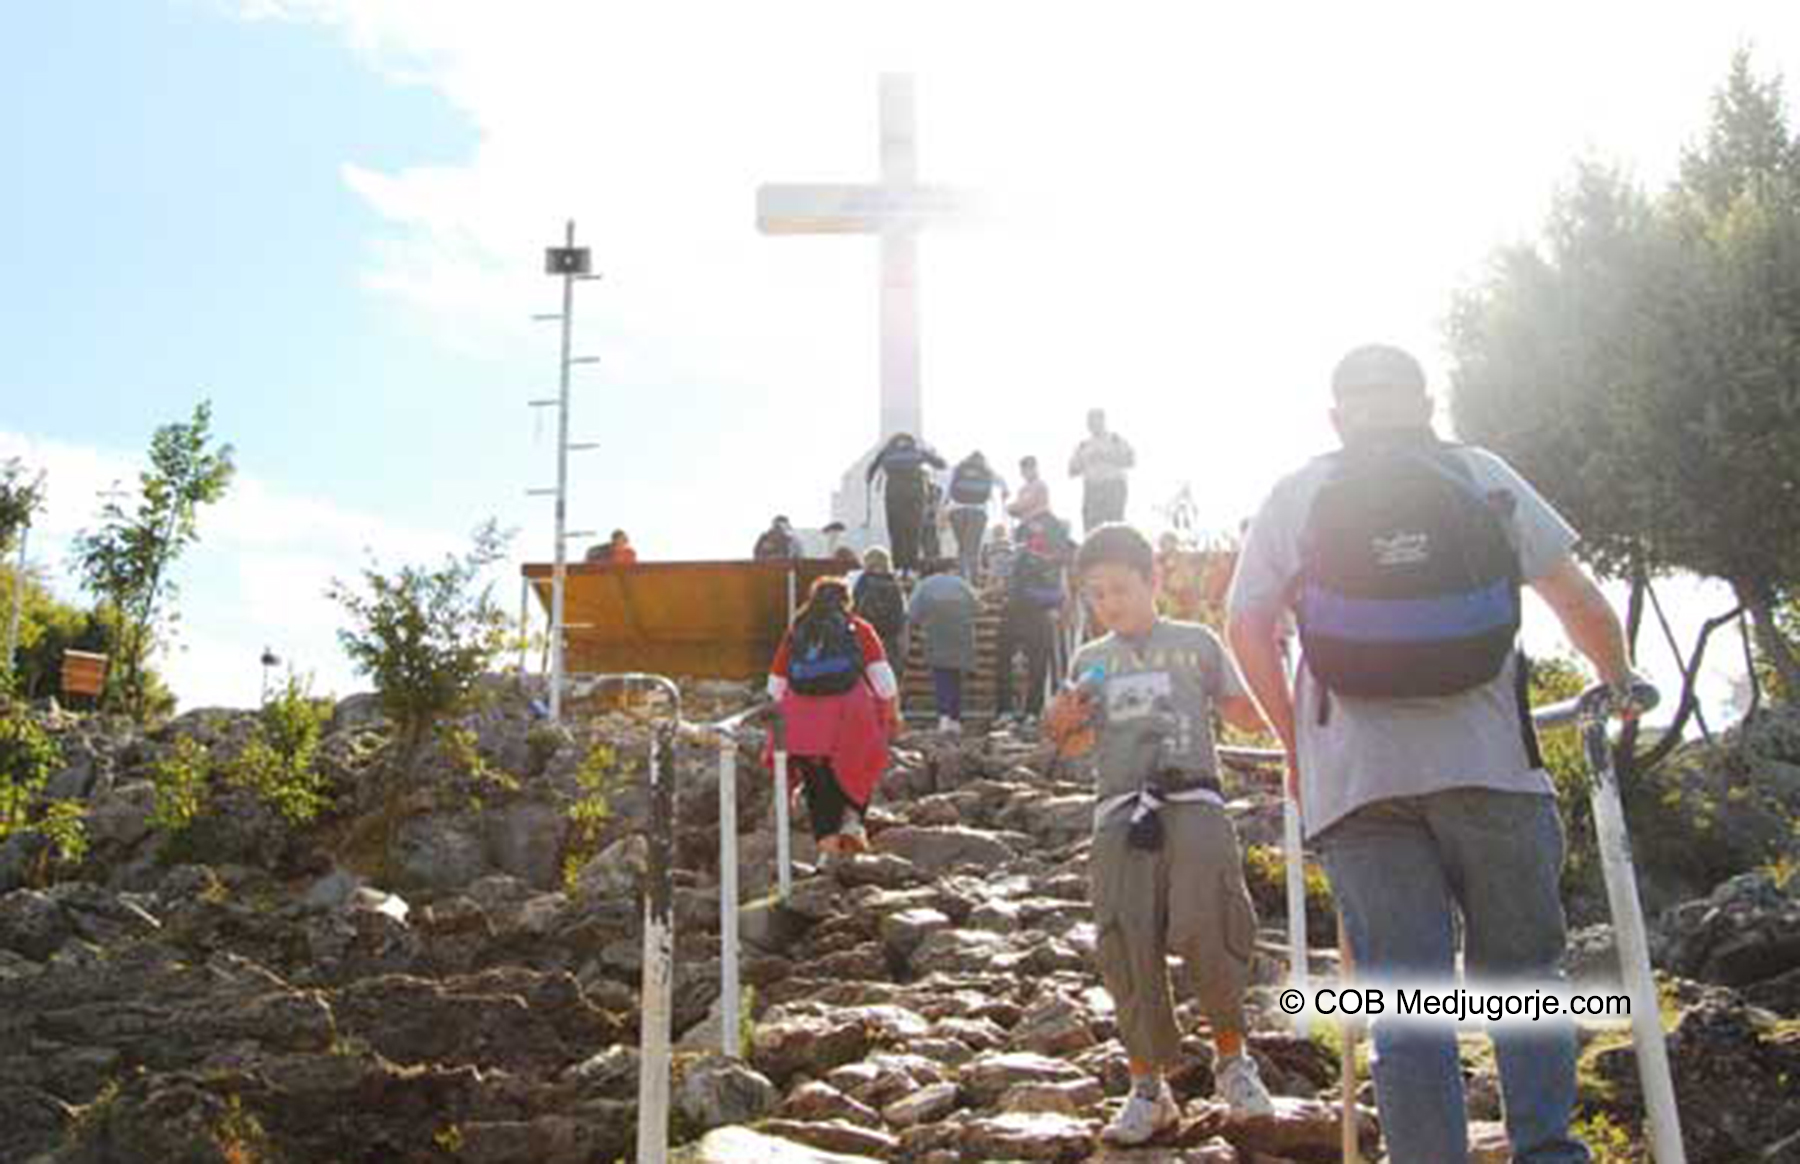 Caritas Pilgrims September 30, 2010